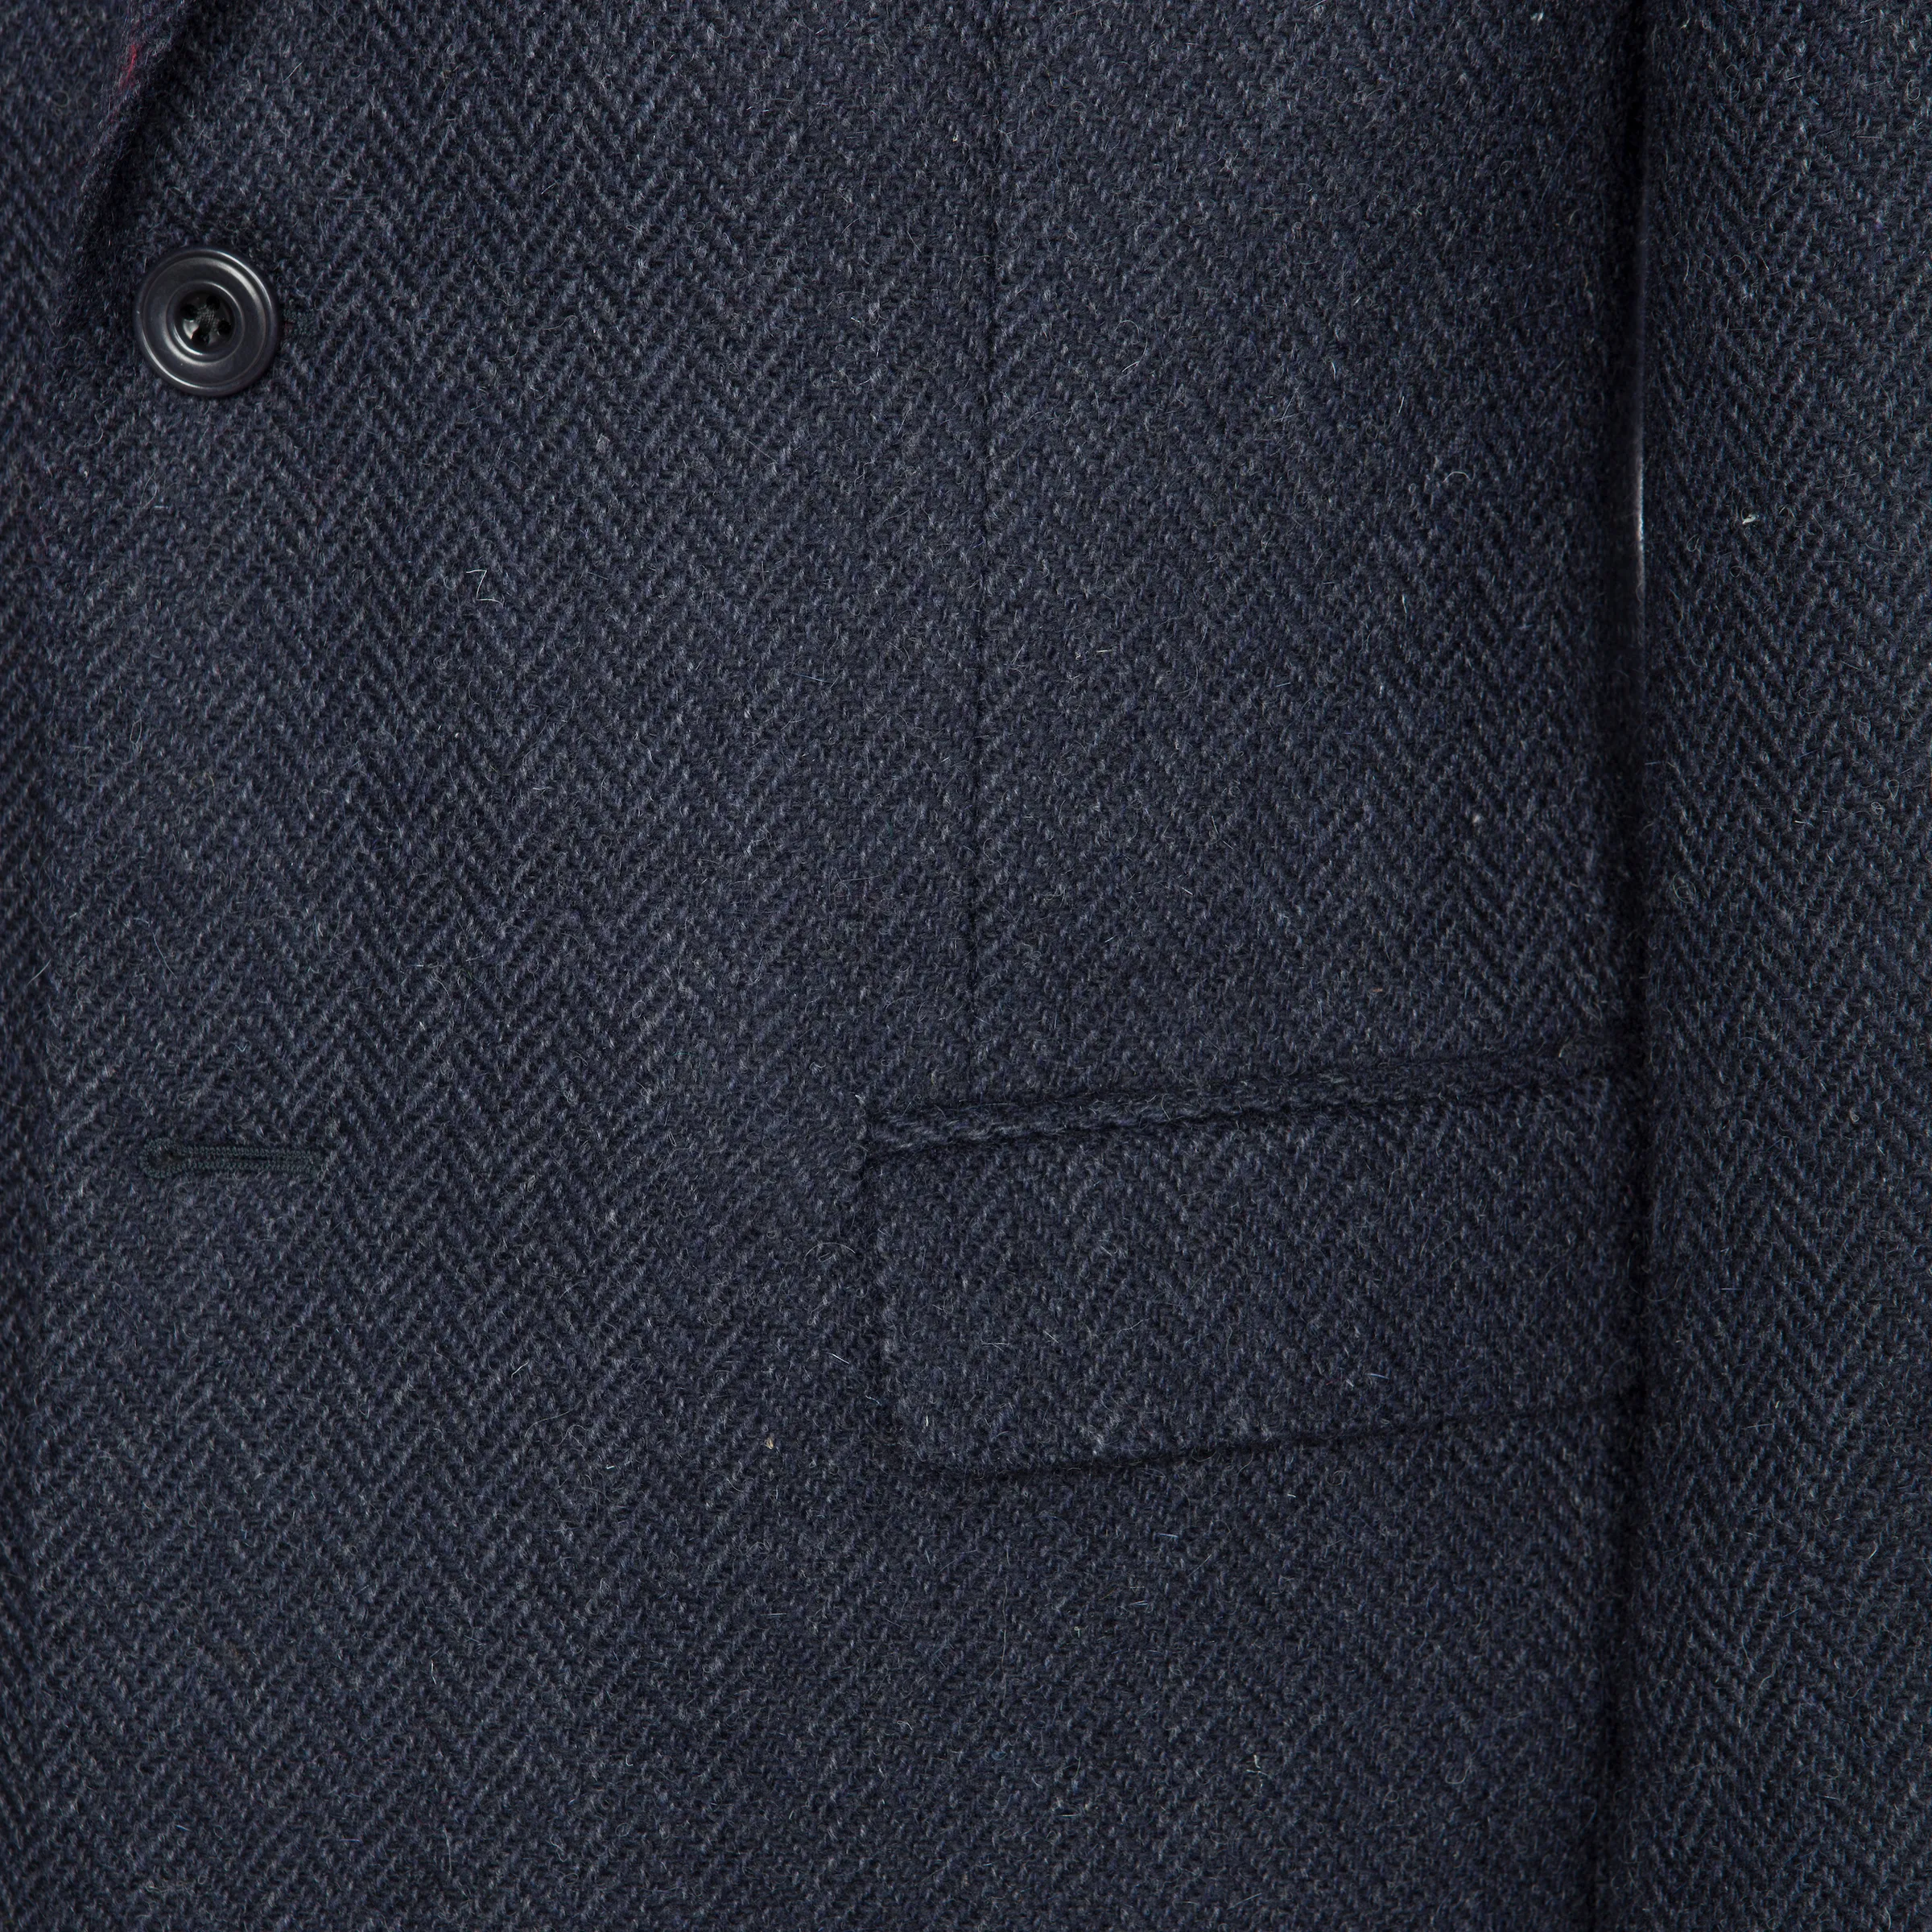  Handwoven Donegal Benbulben Navy Tweed Jacket